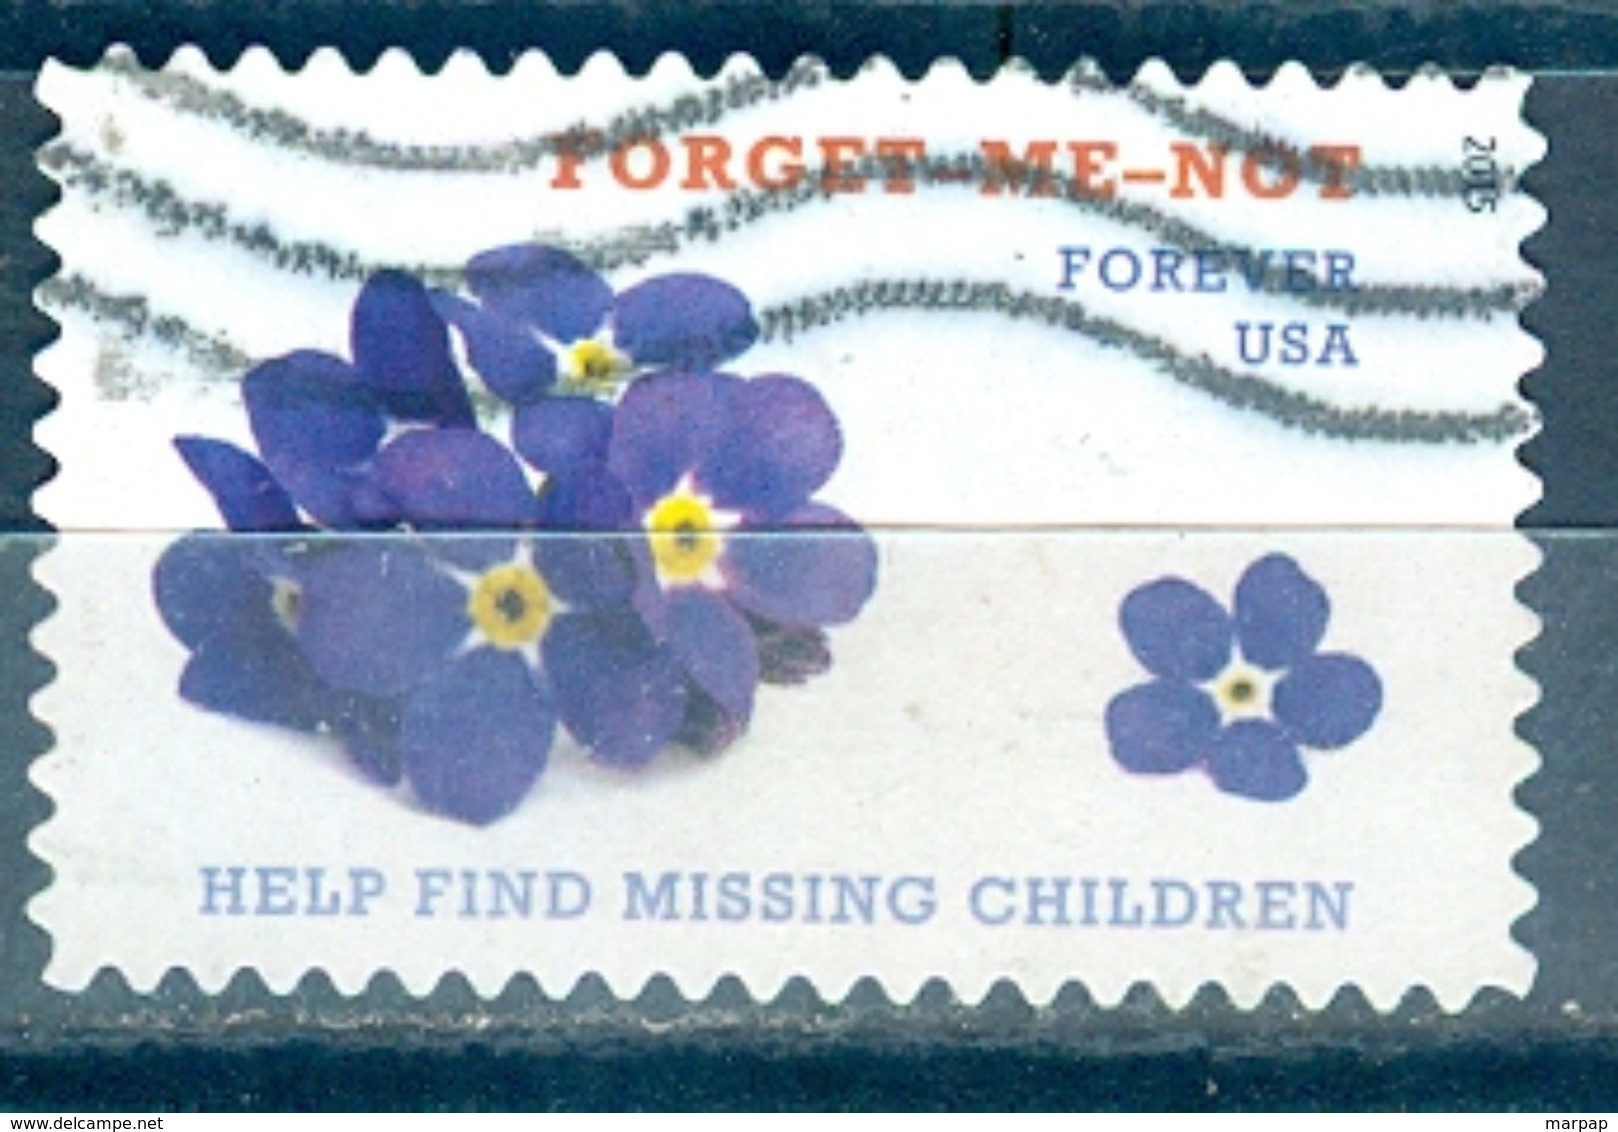 USA, Yvert No 4809 - Used Stamps